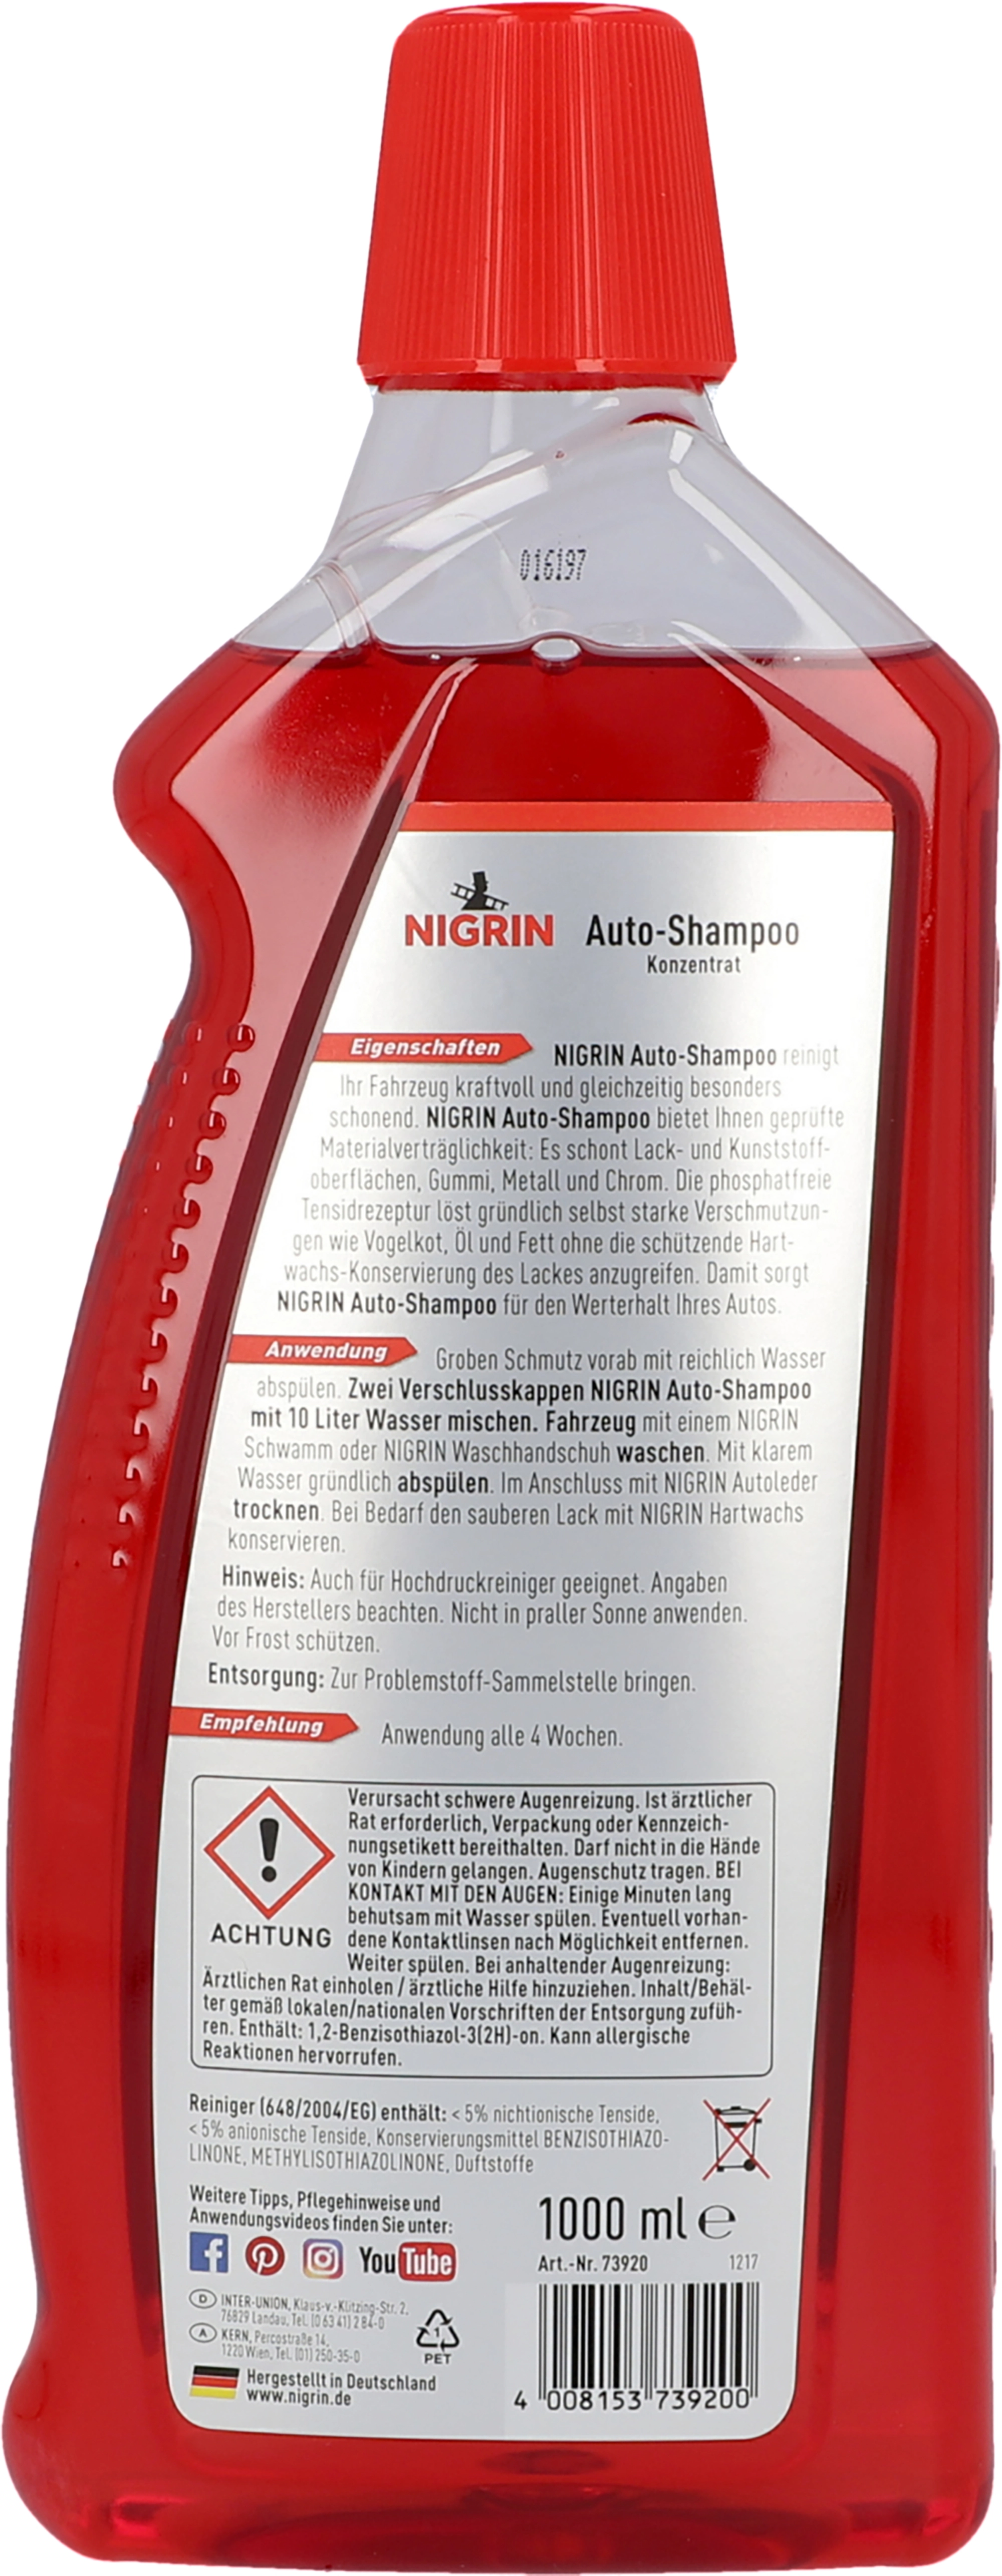 Nigrin Shampoo Konzentrat Orange 1 l kaufen bei OBI